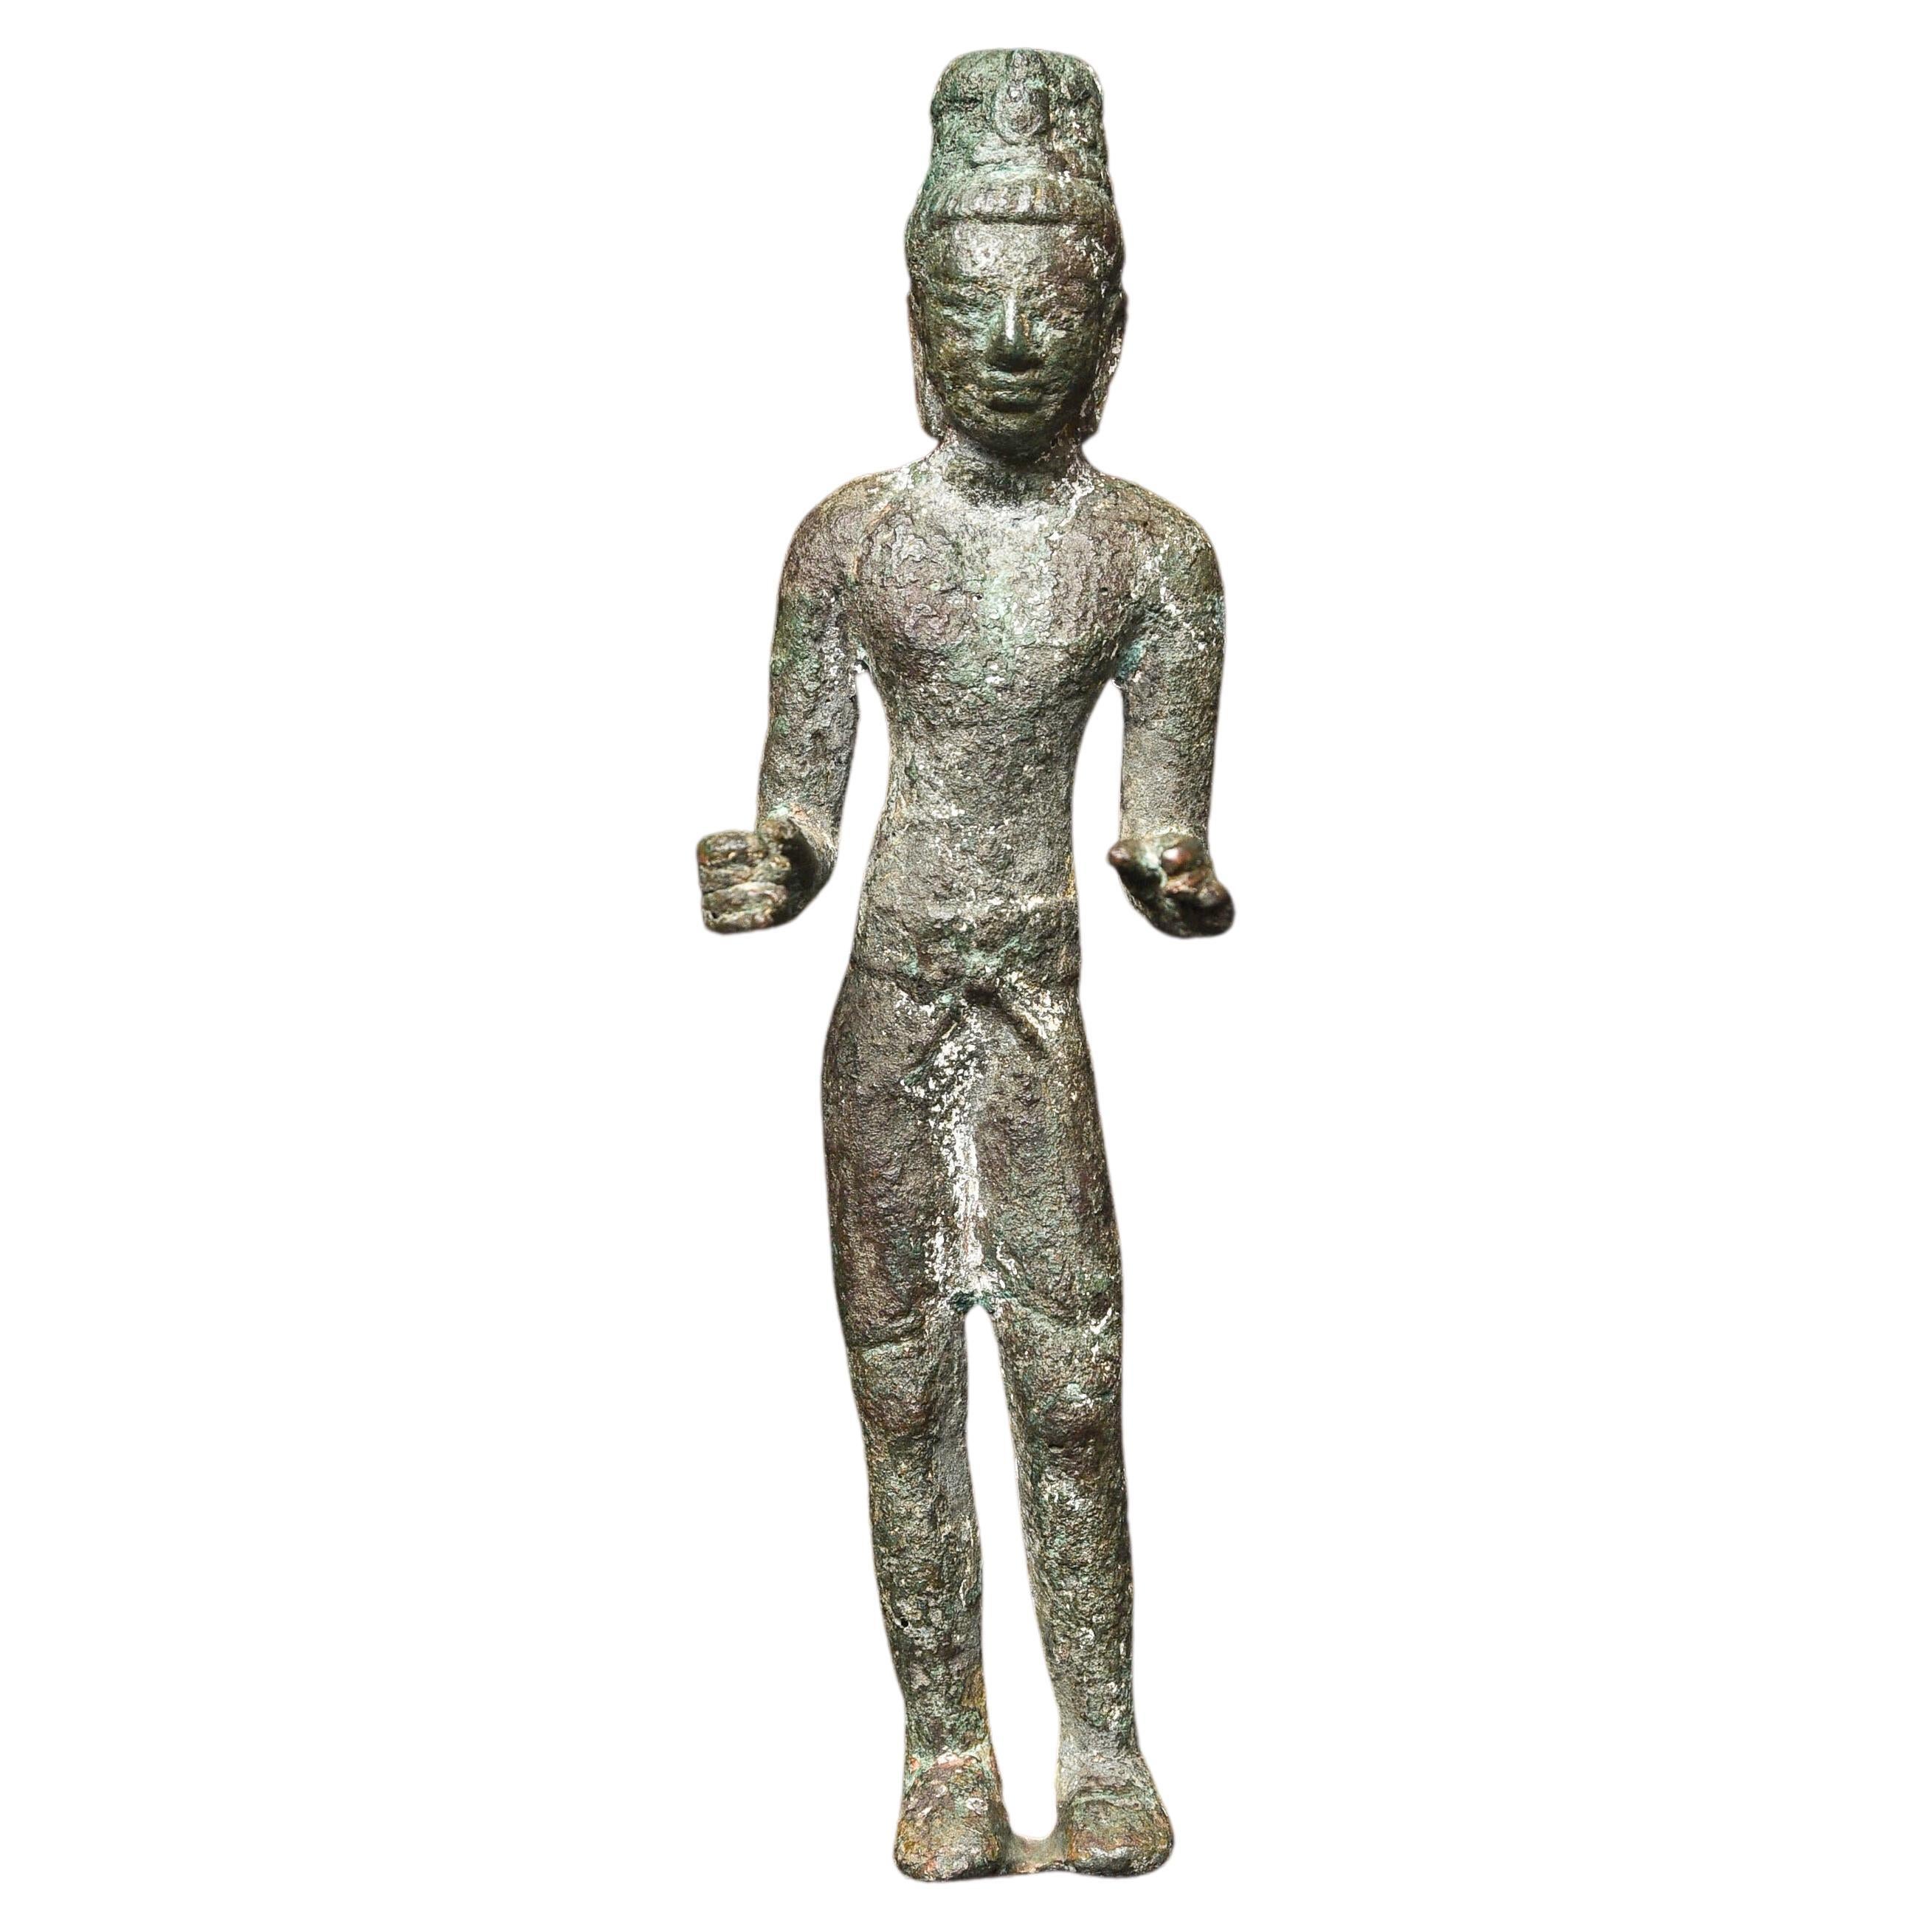 7th/9thC Solid-Cast Bronze Prakhon Chai Buddha or Bodhisattva - 9688